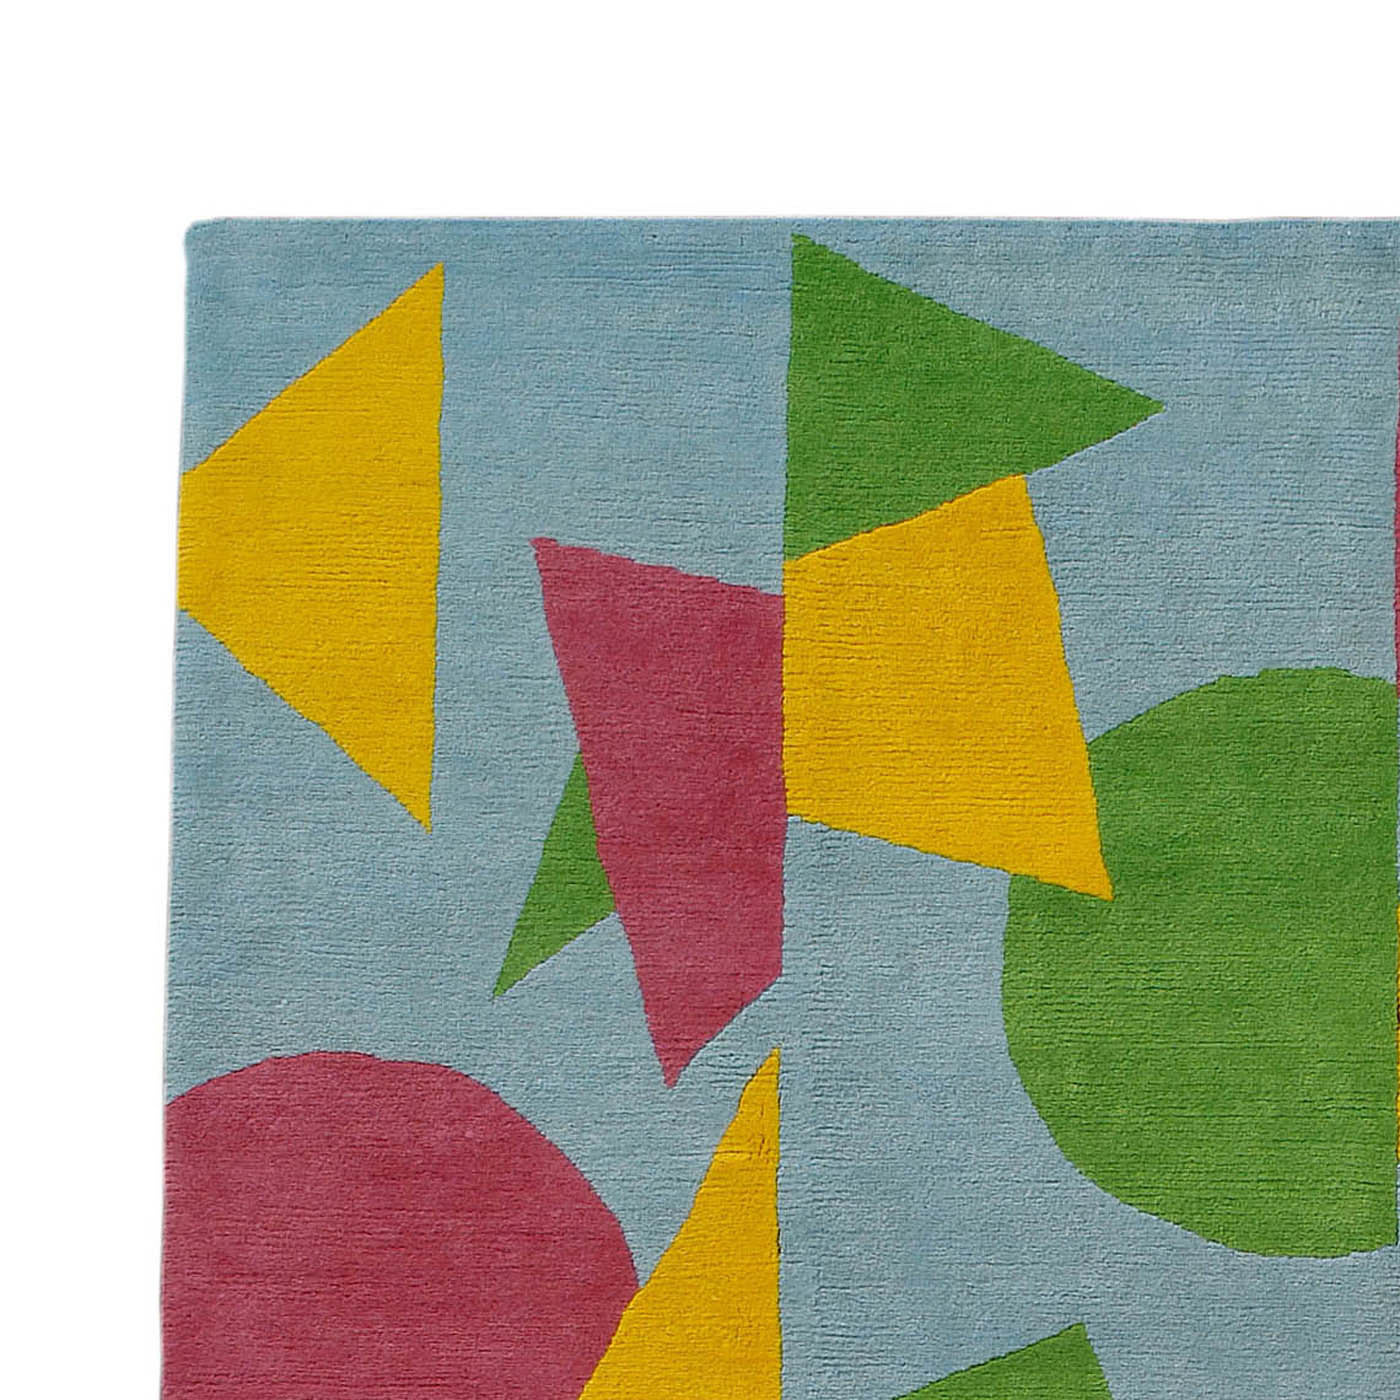 AM5 Carpet by A. Mendini - Post Design - Memphis